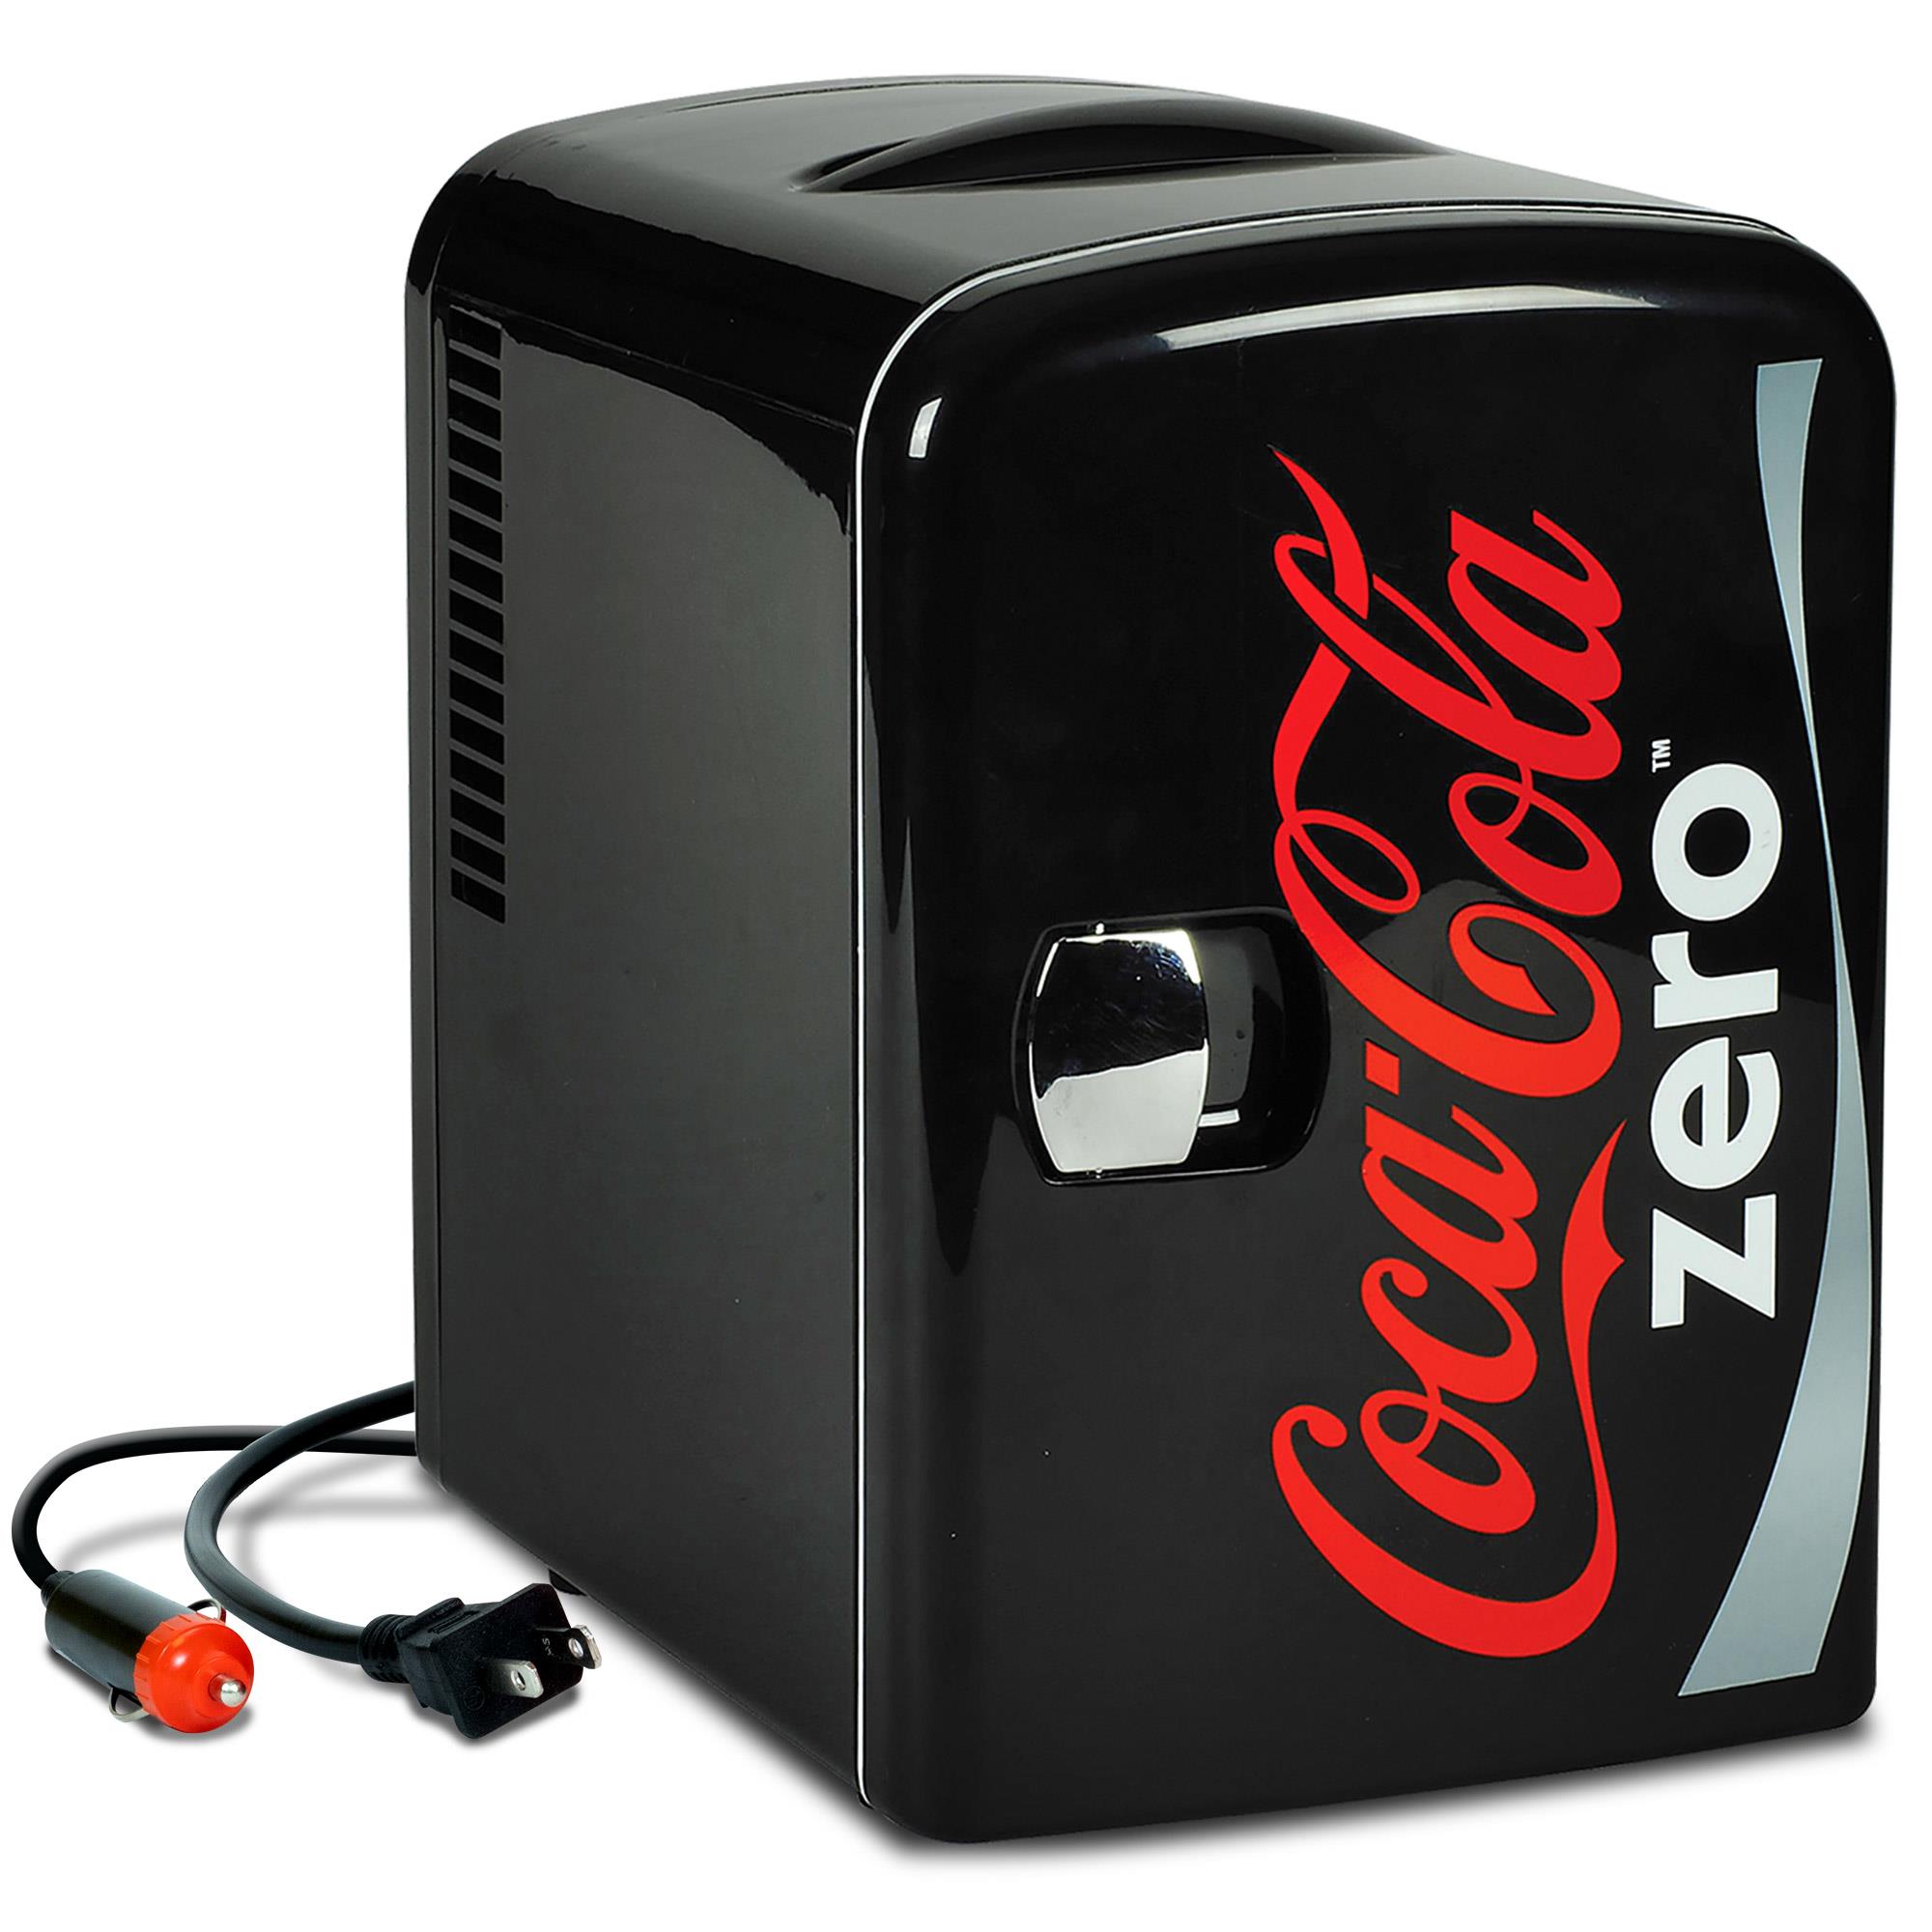 Coca-Cola Mini Refrigerators